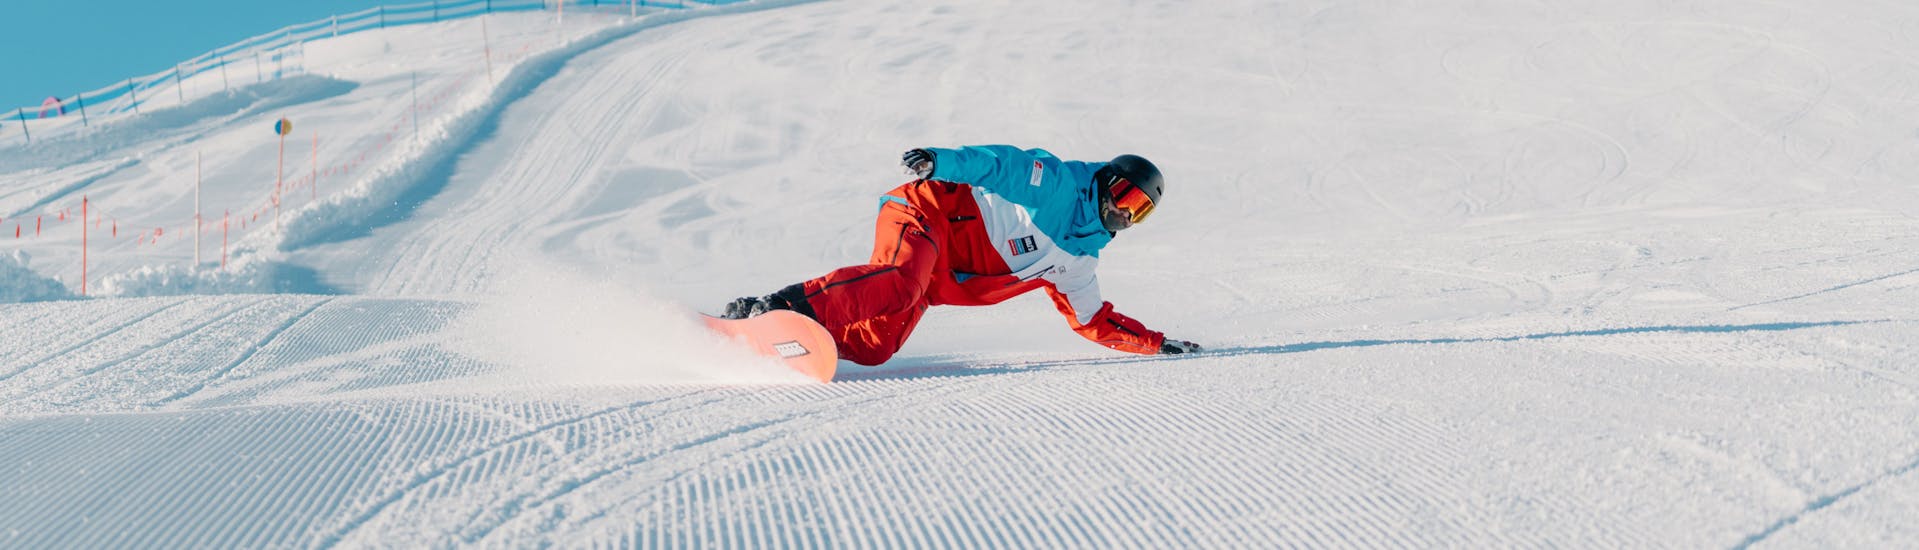 Clases de snowboard privadas a partir de 6 años para todos los niveles con Heli's Skischule Saalbach-Hinterglemm.